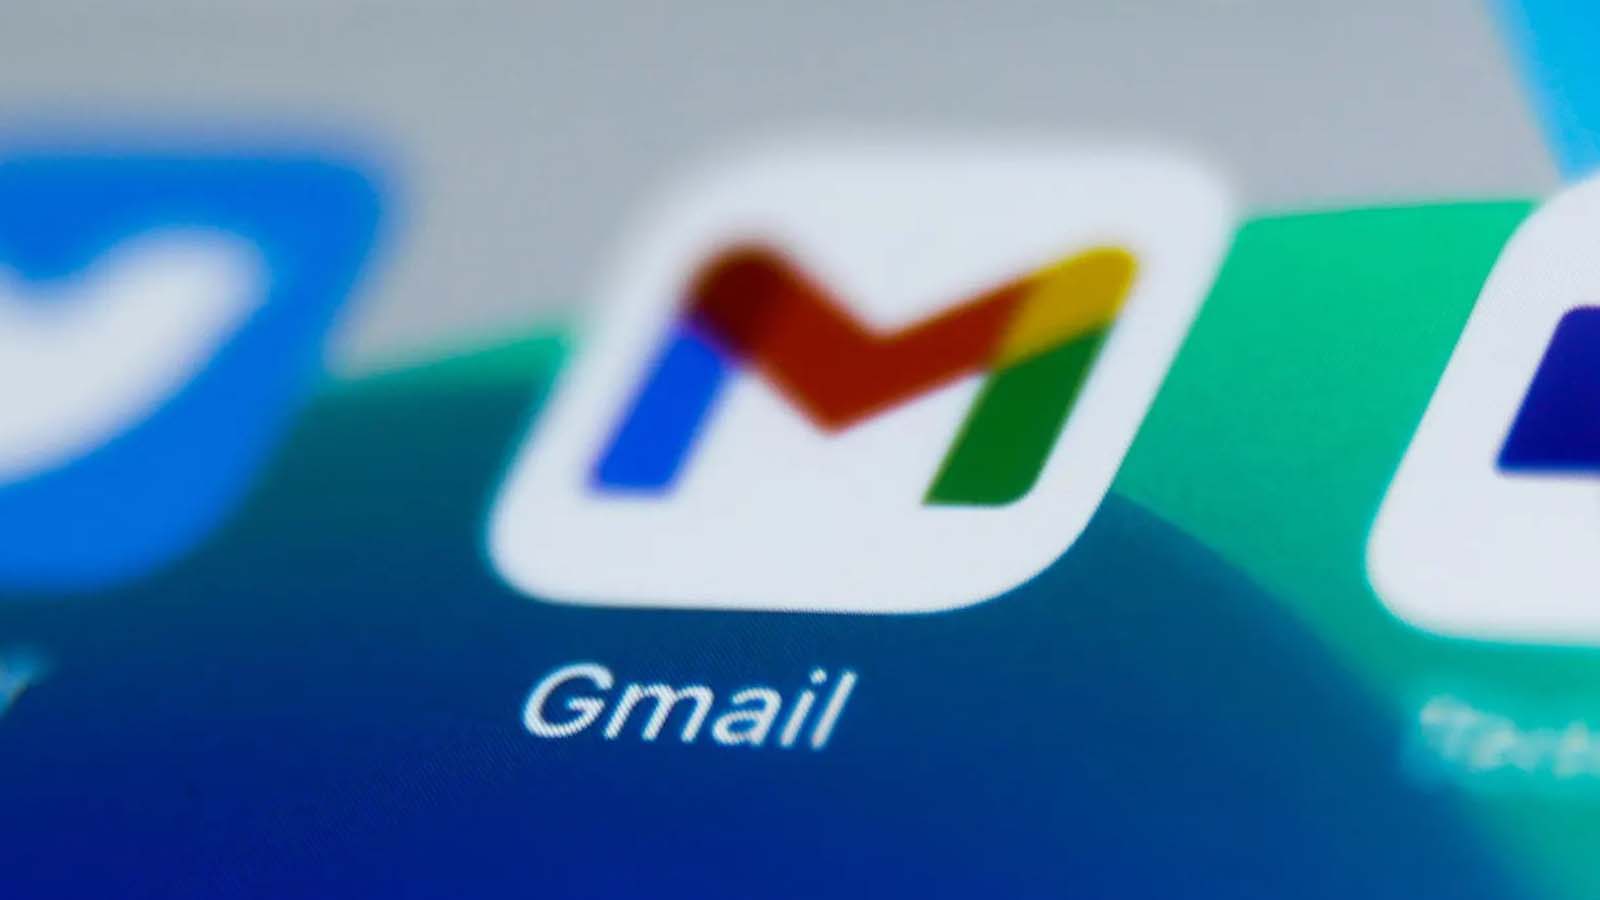 Gmail introduce una funzione innovativa per semplificare la gestione delle email indesiderate